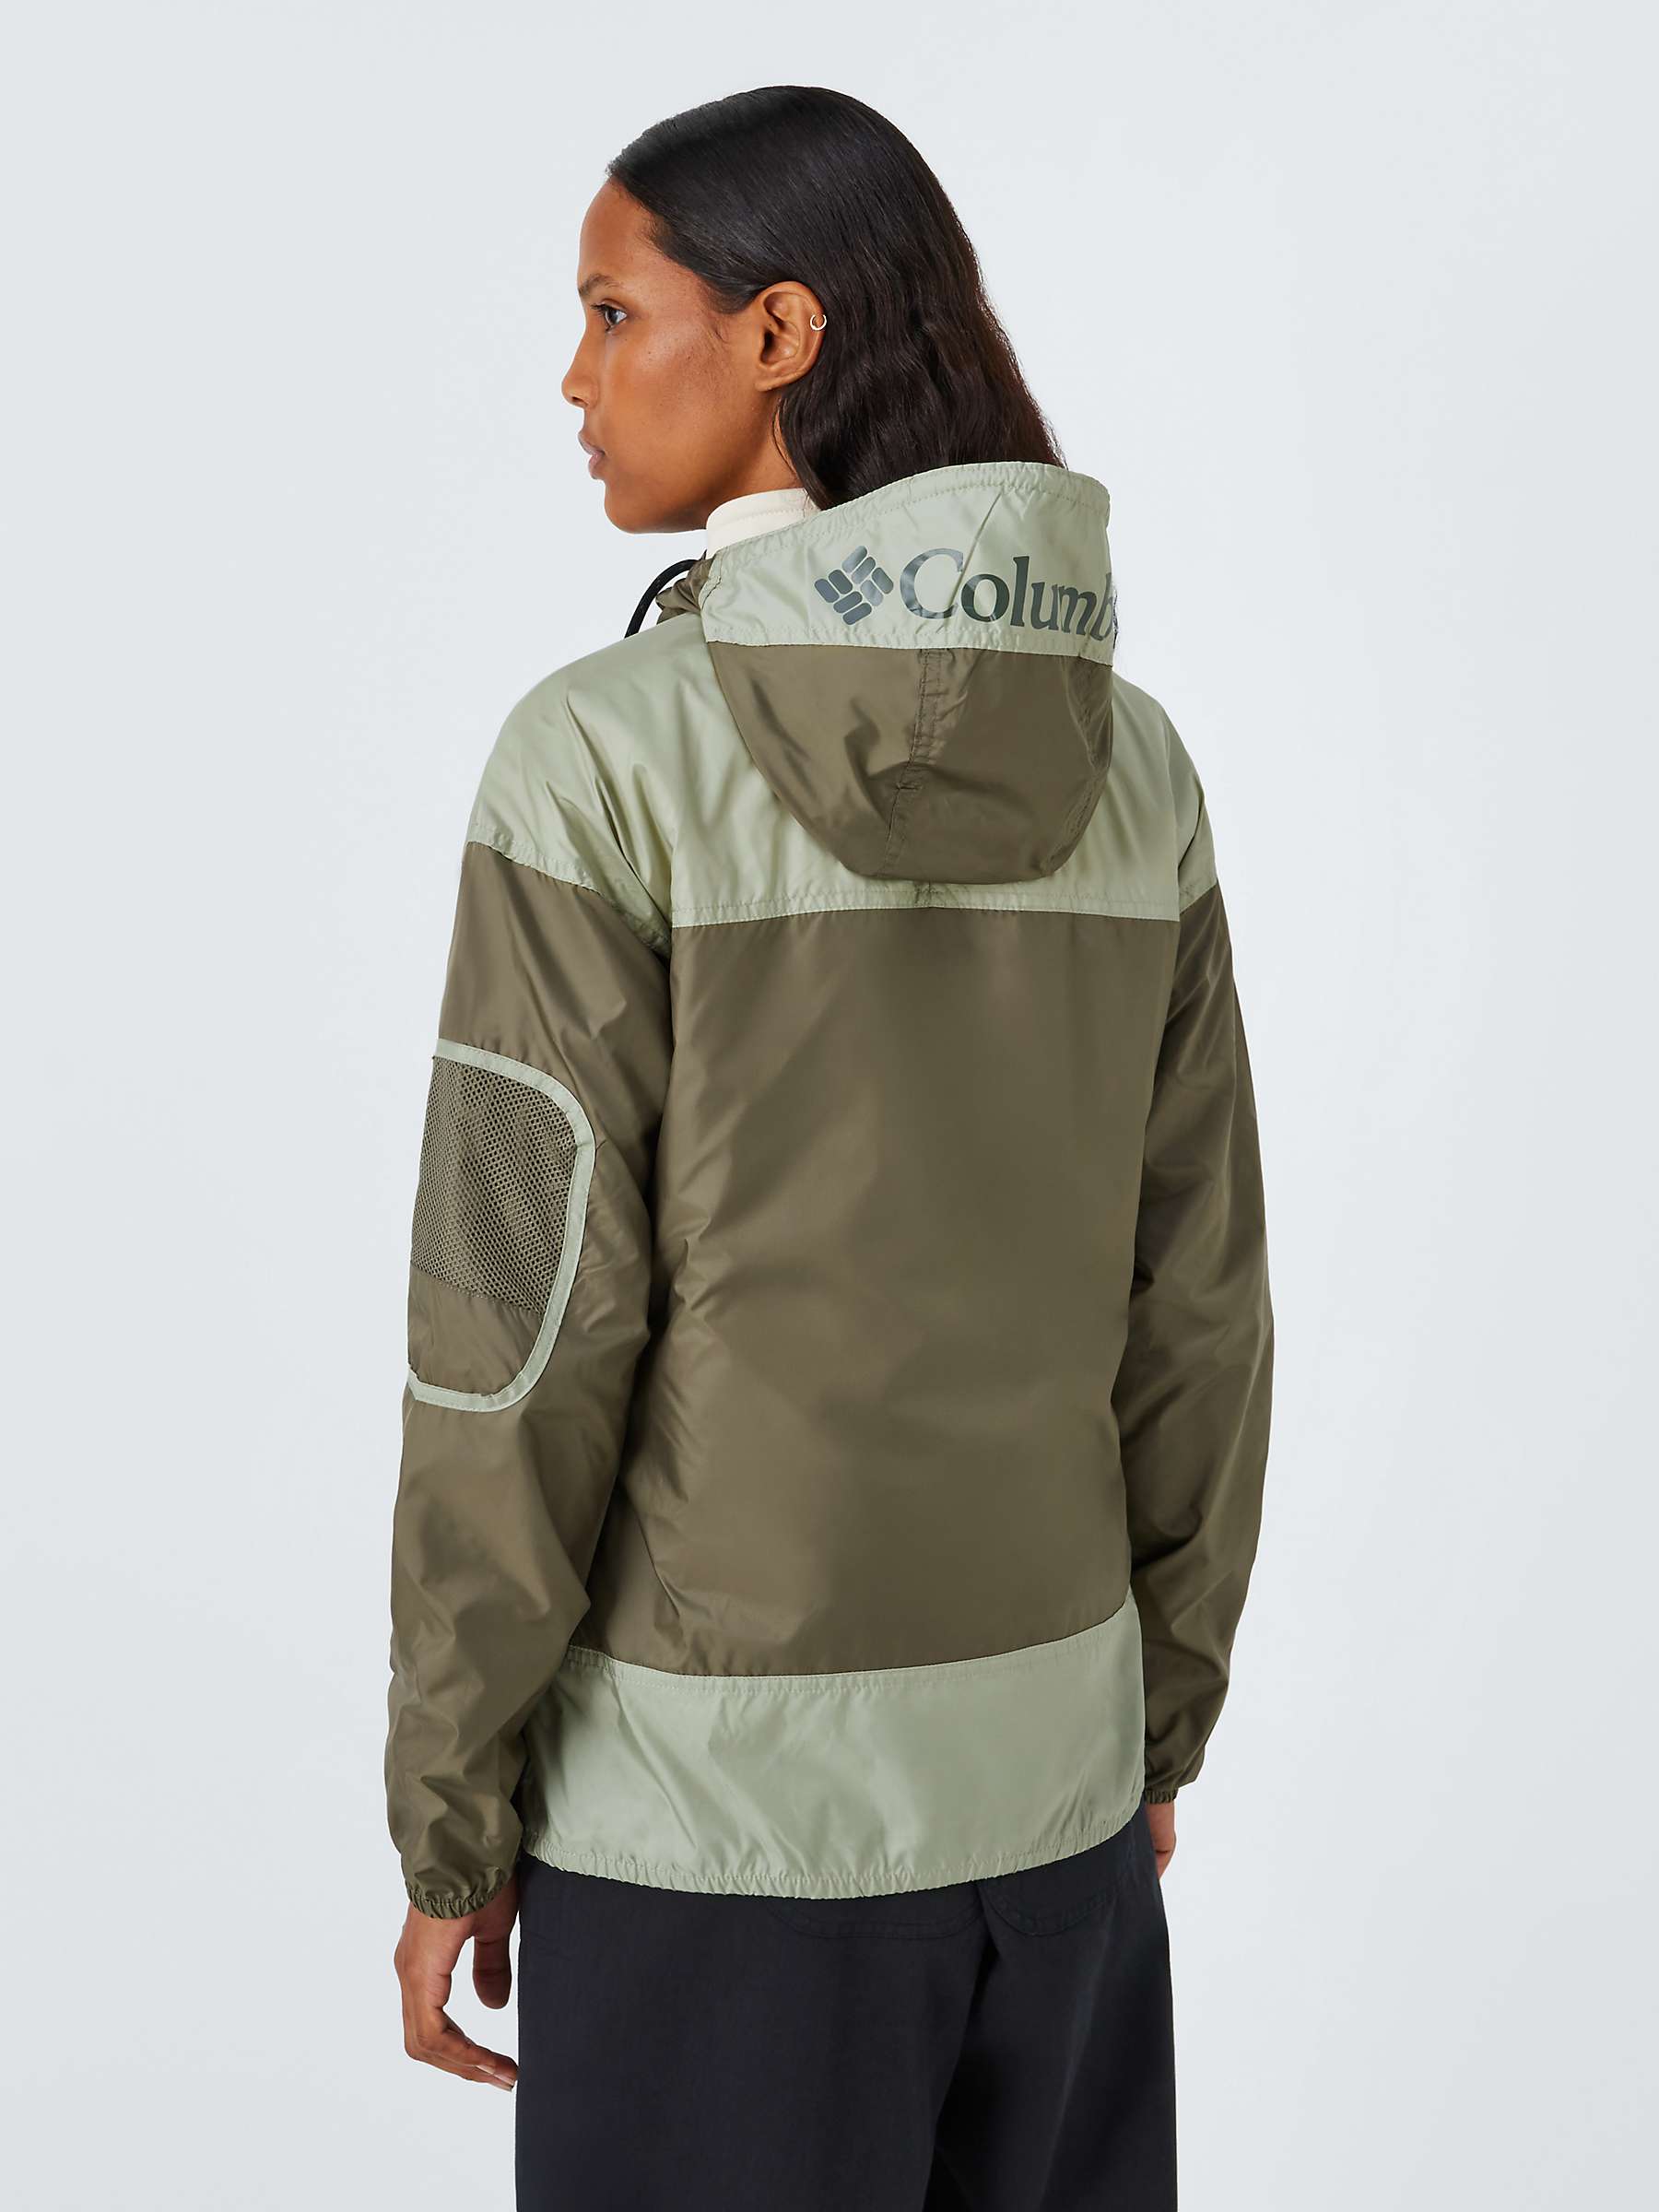 Buy Columbia Women's Challenger Windbreaker Jacket Online at johnlewis.com